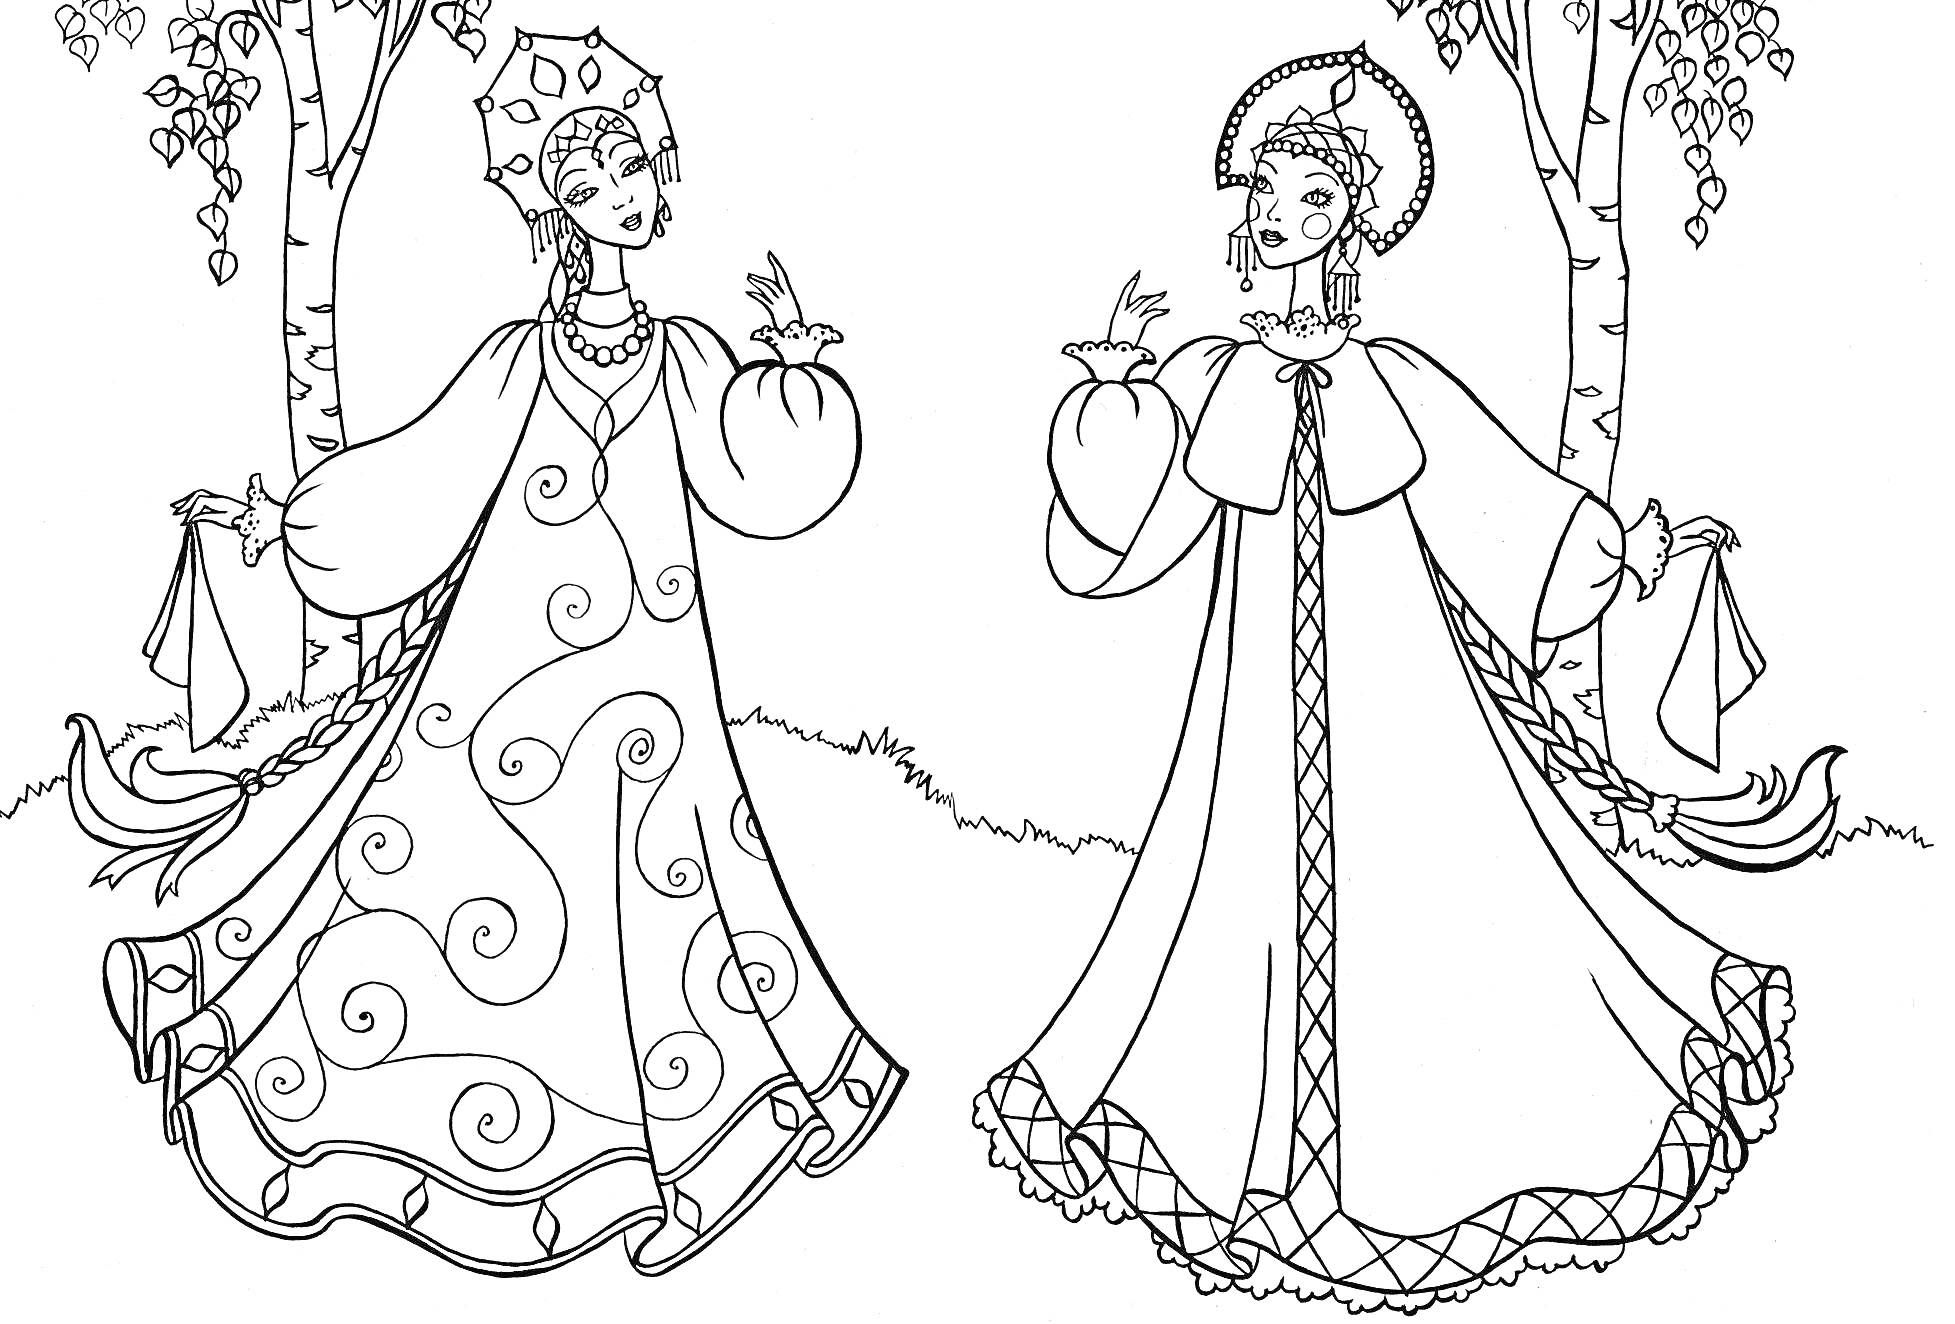 Раскраска Две девушки в русском народном костюме с кокошниками, сарафанами и рукавами-фонариками, держащие в руках птиц, на фоне берез